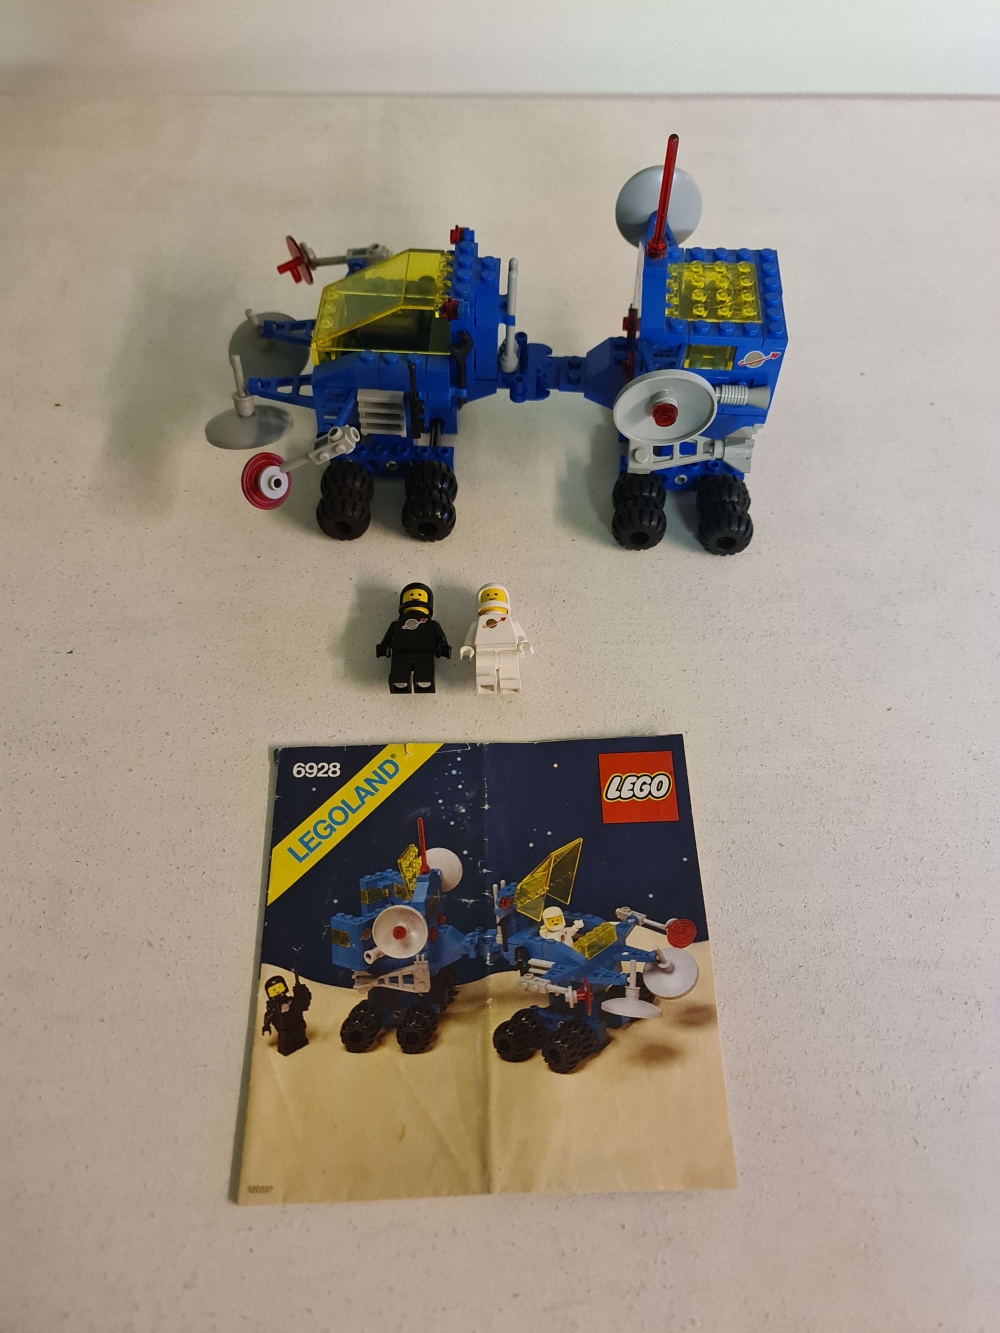 Sett 6928 fra Lego Classic Space serien.
Flott sett. Komplett med manual.